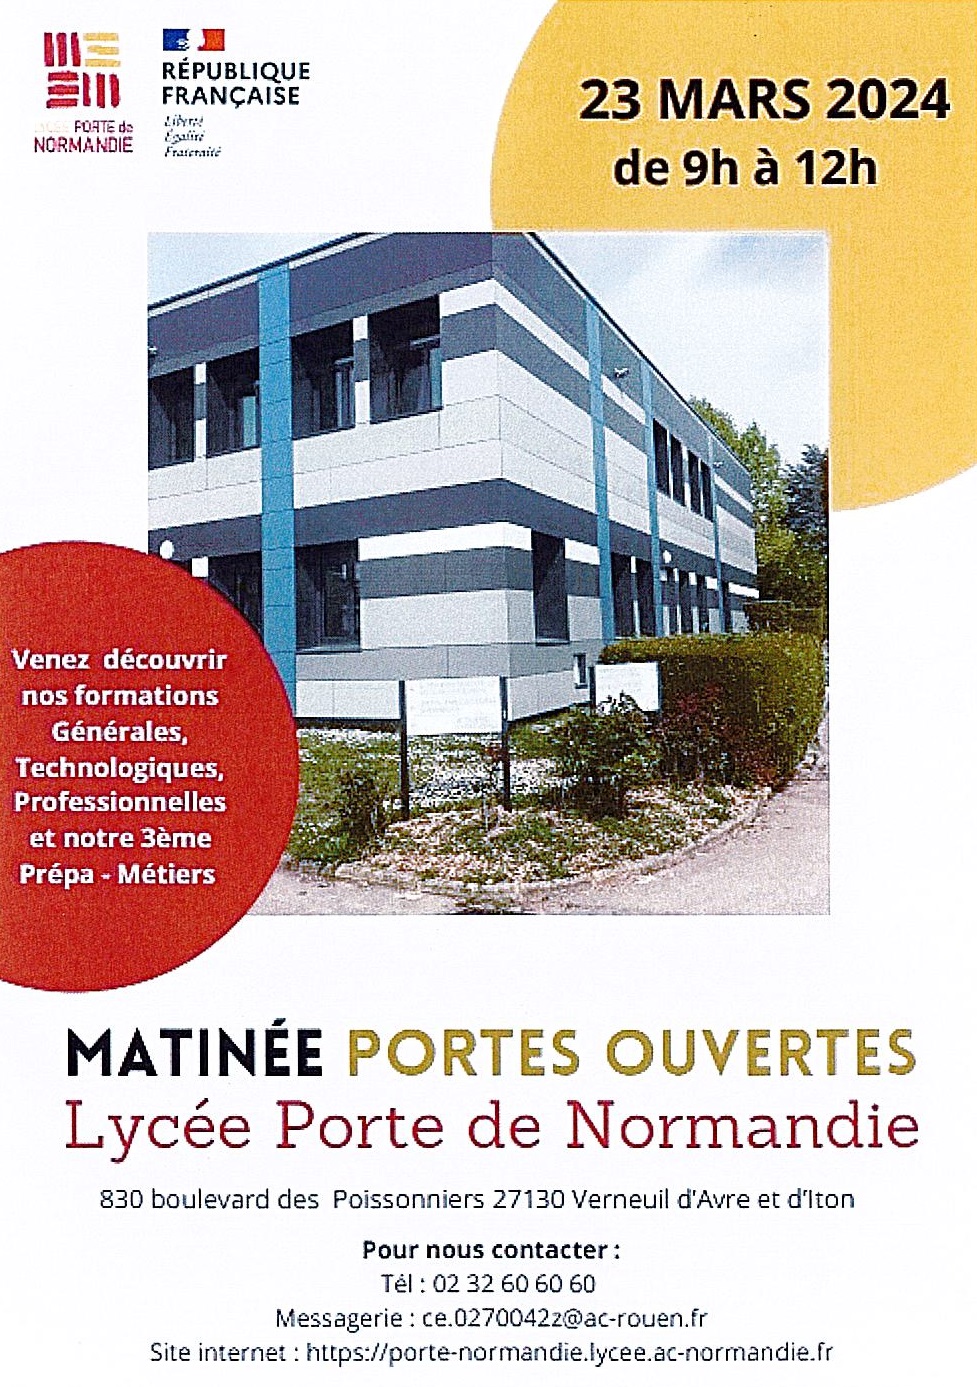 Lycée Porte de Normandie - Portes ouvertes